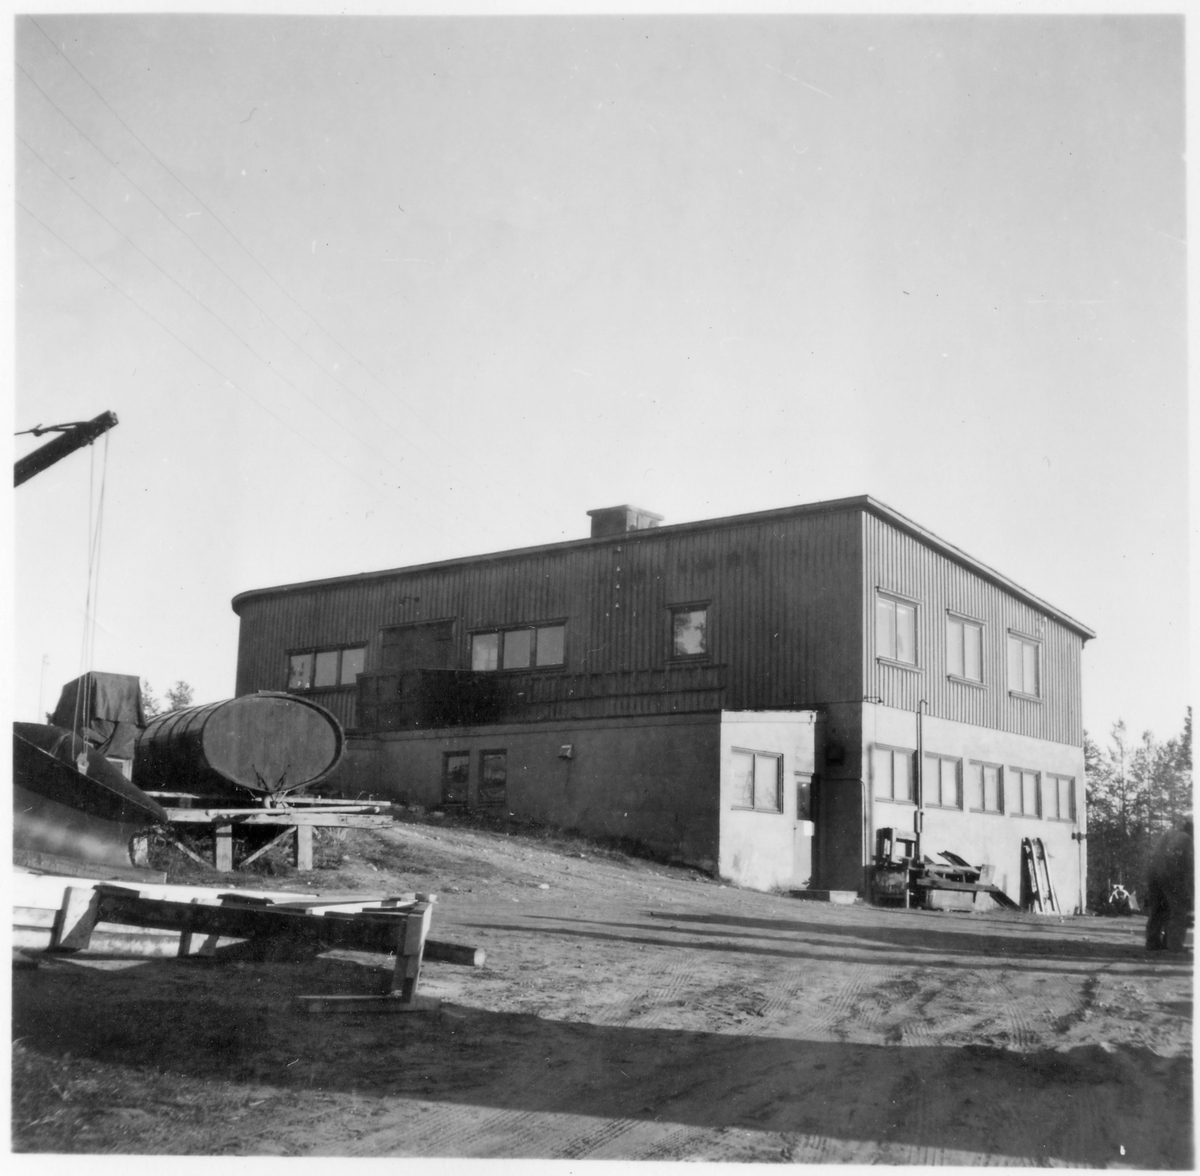 Vägstation BD17, Jokkmokk. Vägstationens huvudbyggnad med garage i bottenvåningen. Kontor i övervåningen (baksidan). Förrådsbyggnad påbyggd på huvudbyggnaden. Luttunna.